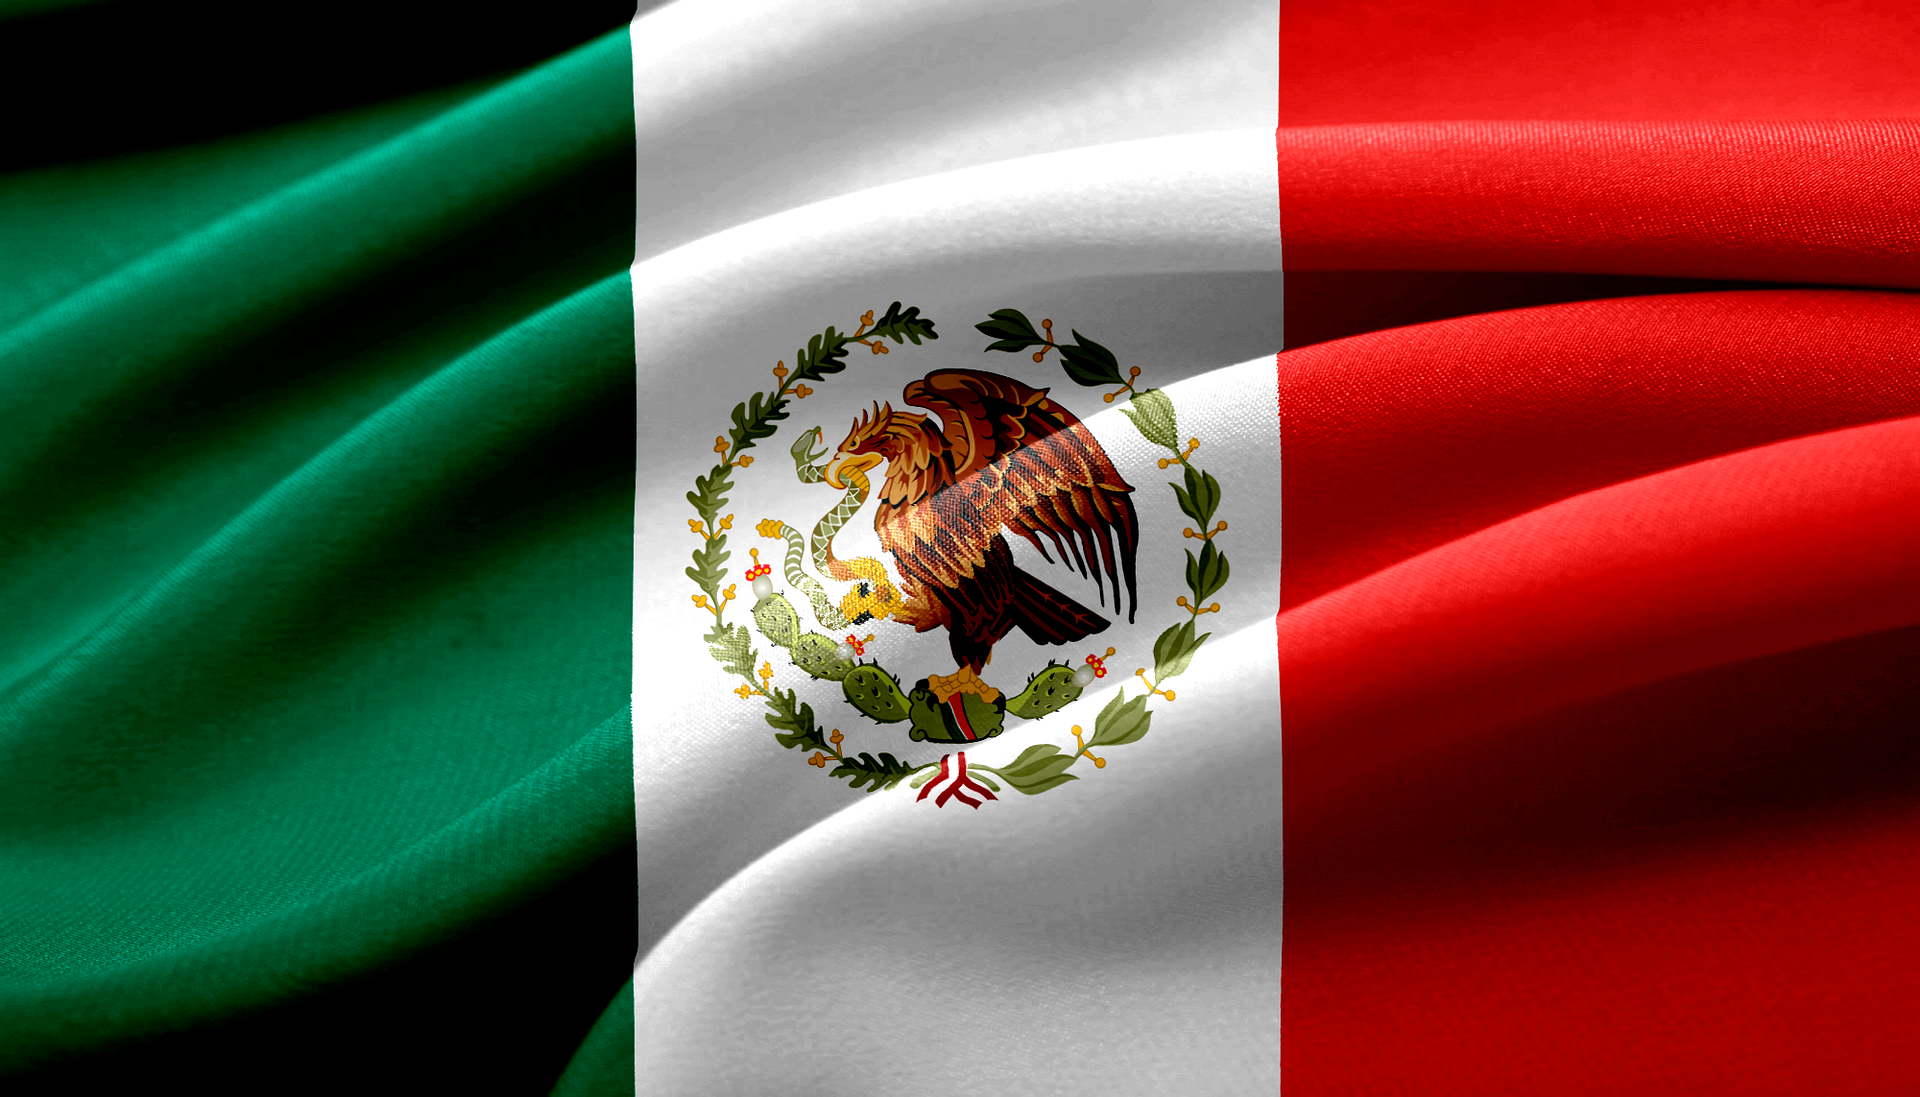 Mexico vlag